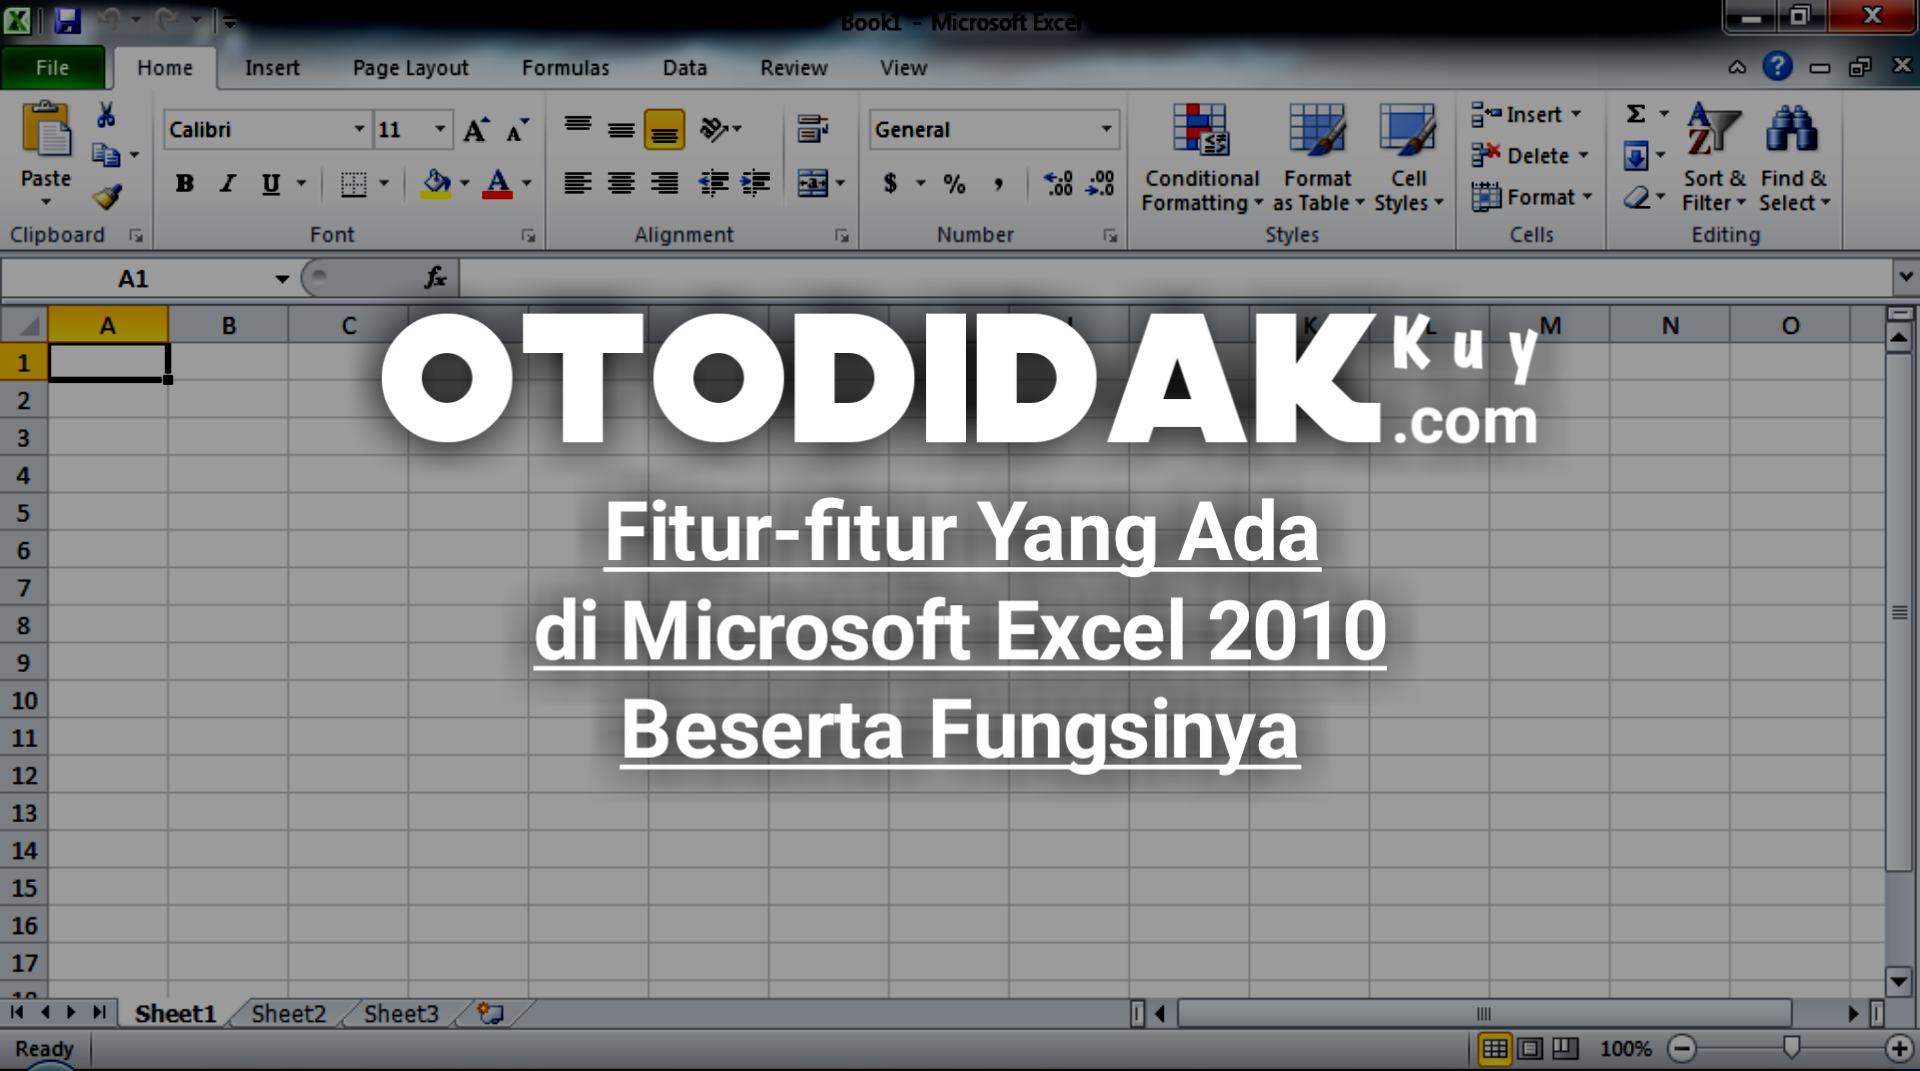 Fitur-fitur Yang Ada di Lingkungan Microsoft Excel 2010 Beserta Fungsinya -  Otodidak Kuy